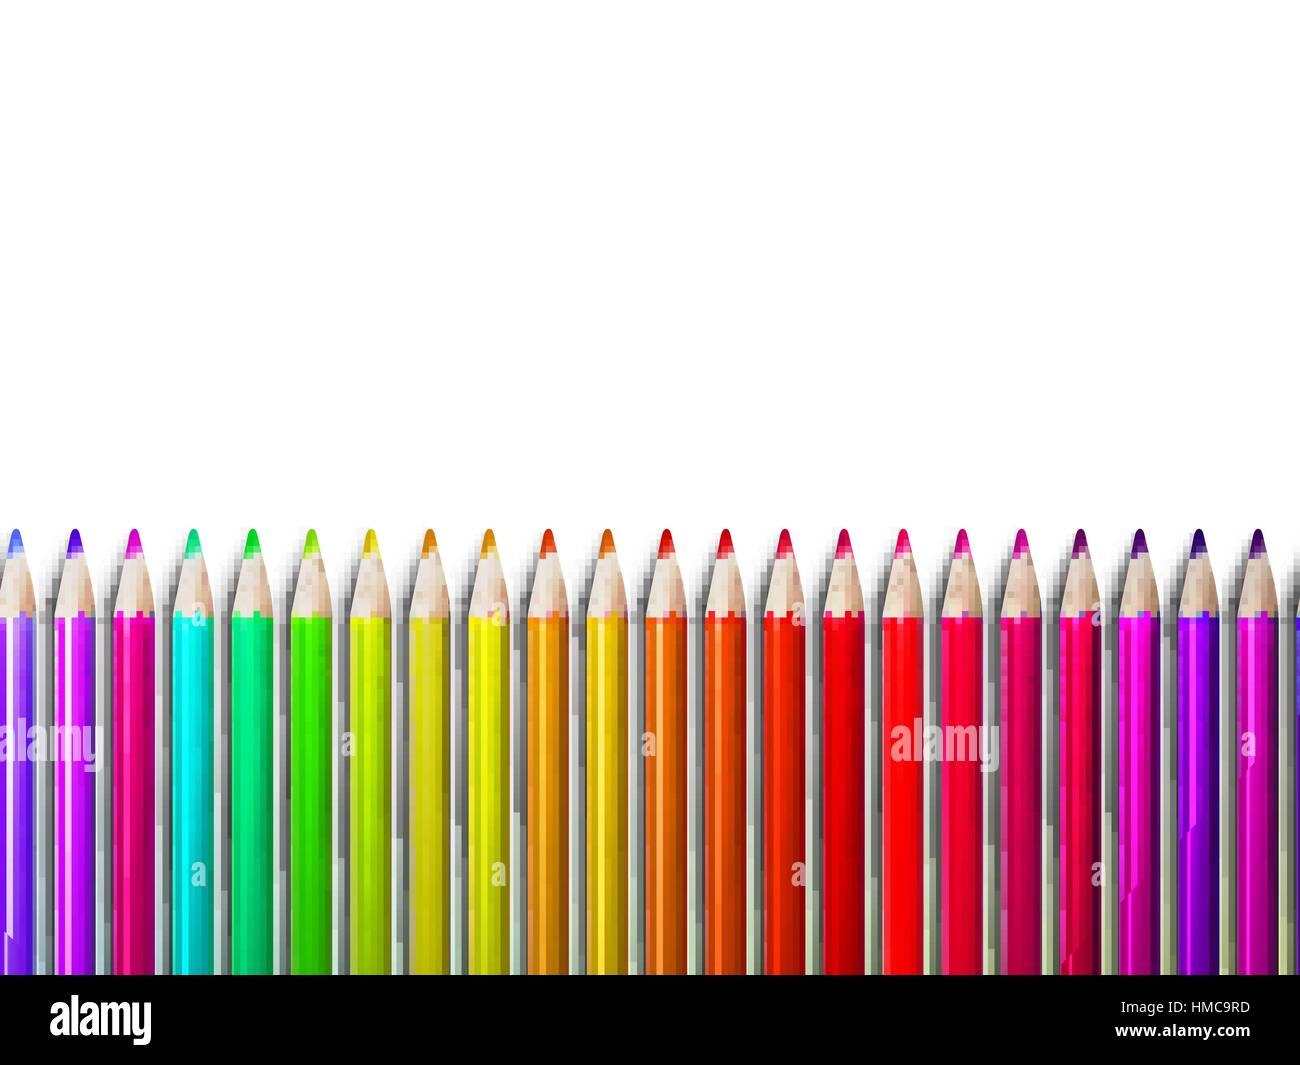 Bunten Bleistift Buntstifte auf weißem Hintergrund, zurück zur Schule. Plus EPS10 Vektor-Datei Stock Vektor